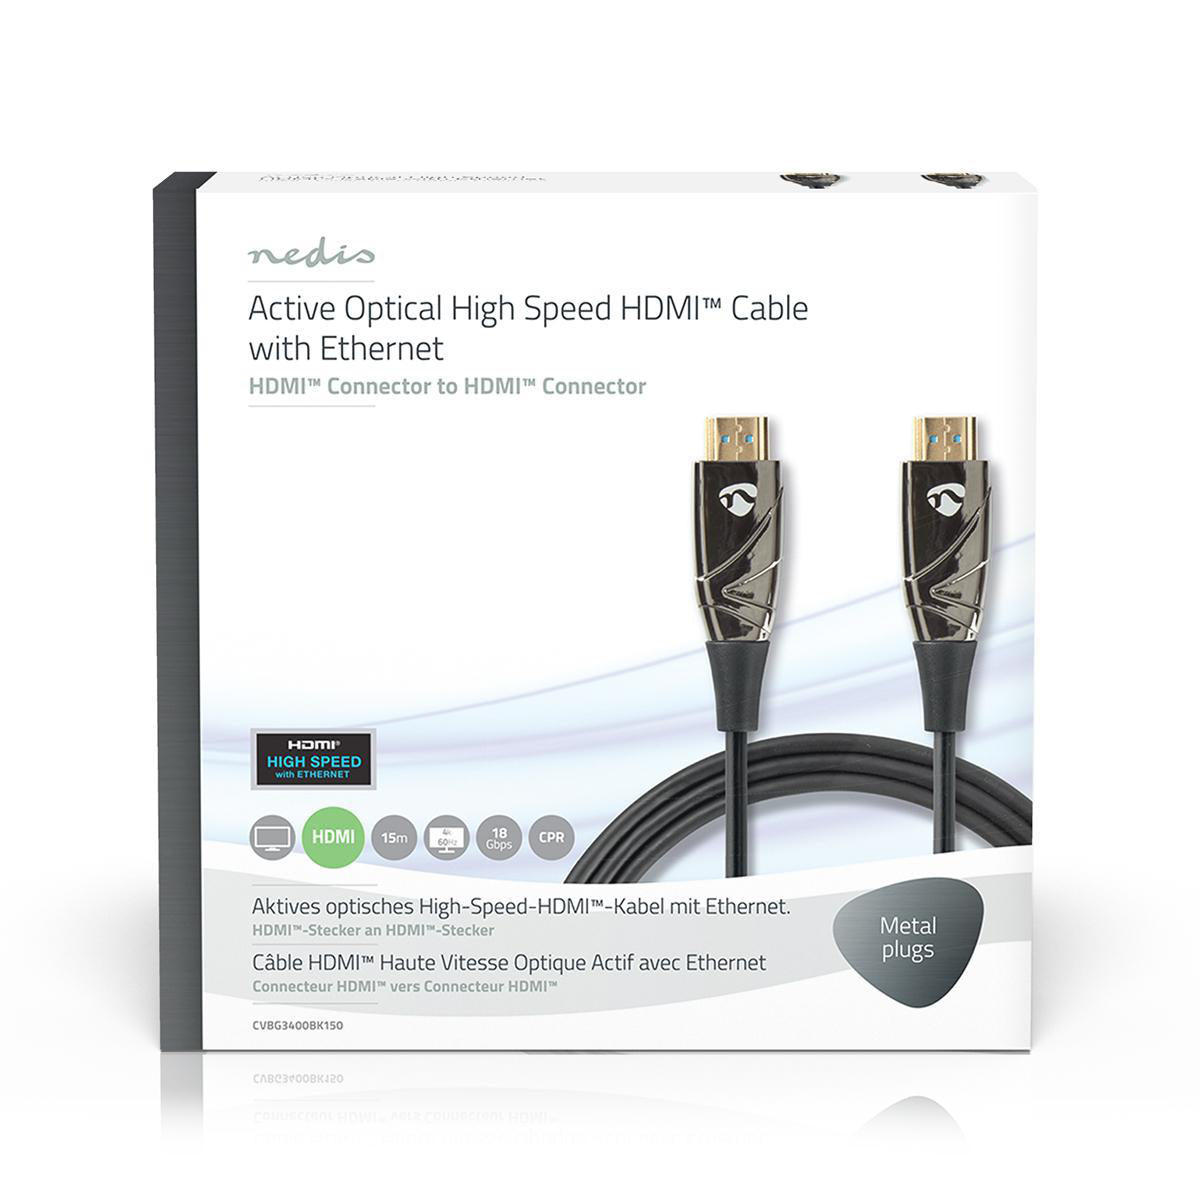 Aktive optische High Speed HDMI-Kabel mit Ethernet | HDMI™ Stecker | HDMI™ Stecker | 4K@60Hz | 18 Gbps | 15.0 m | Rund | PVC | Schwarz | Kartonverpackung